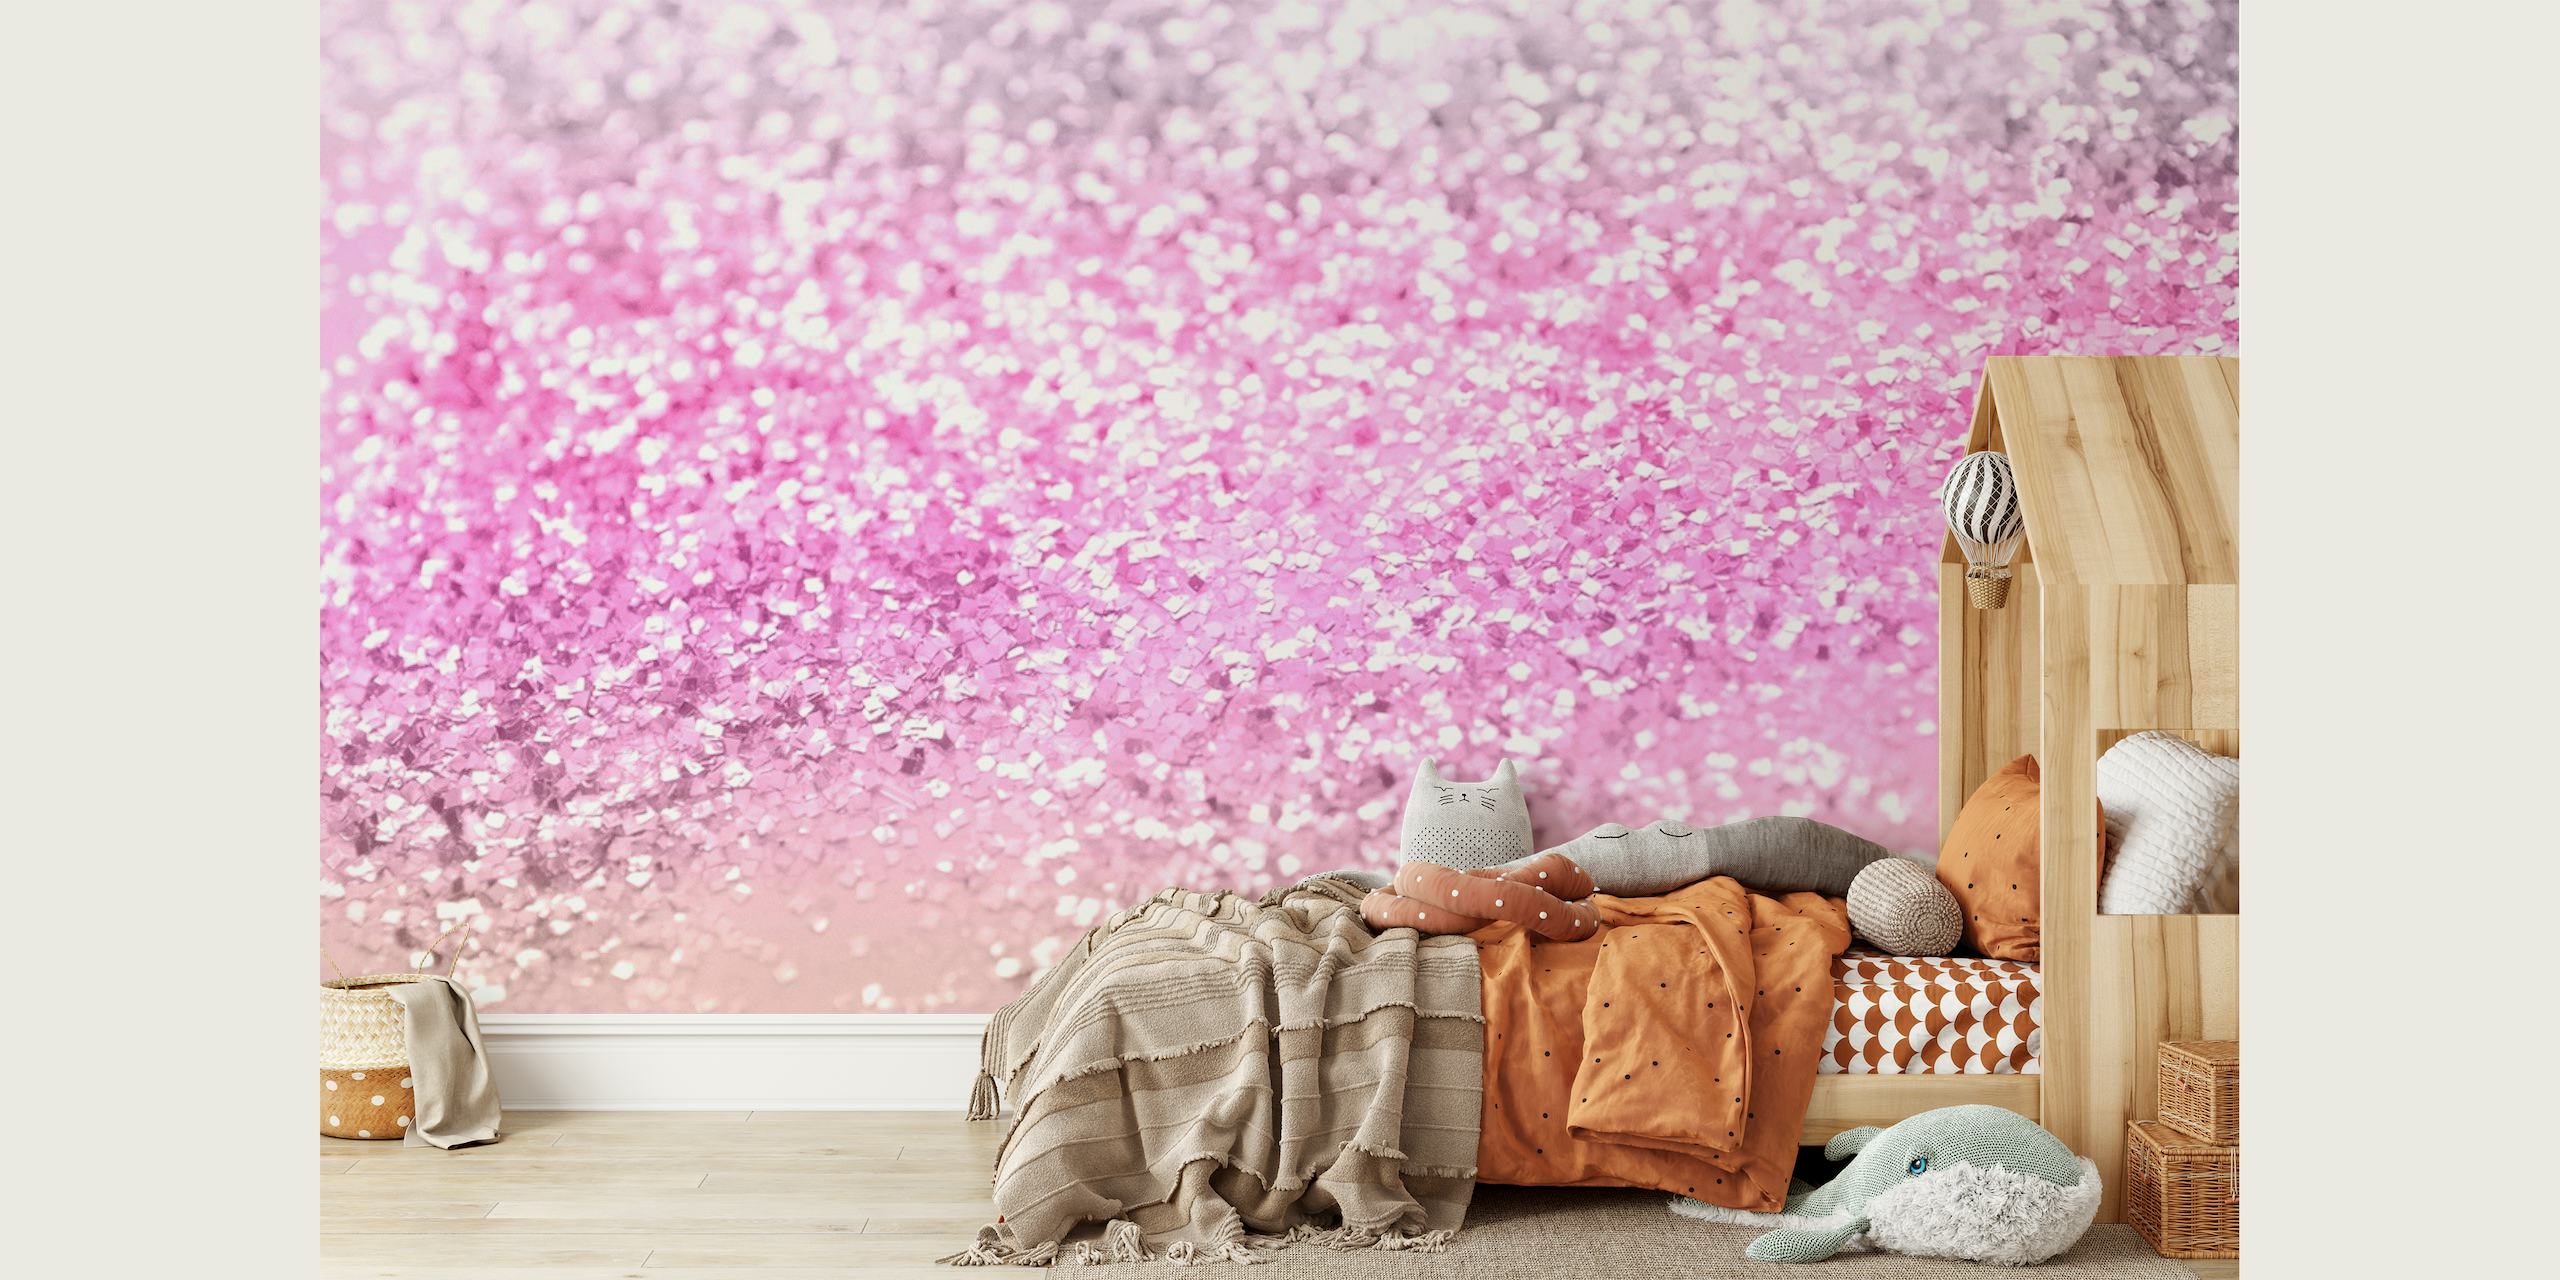 Pinkki ja hopea kimalteleva gradienttiseinämaalaus taianomaiseen huoneteemaan